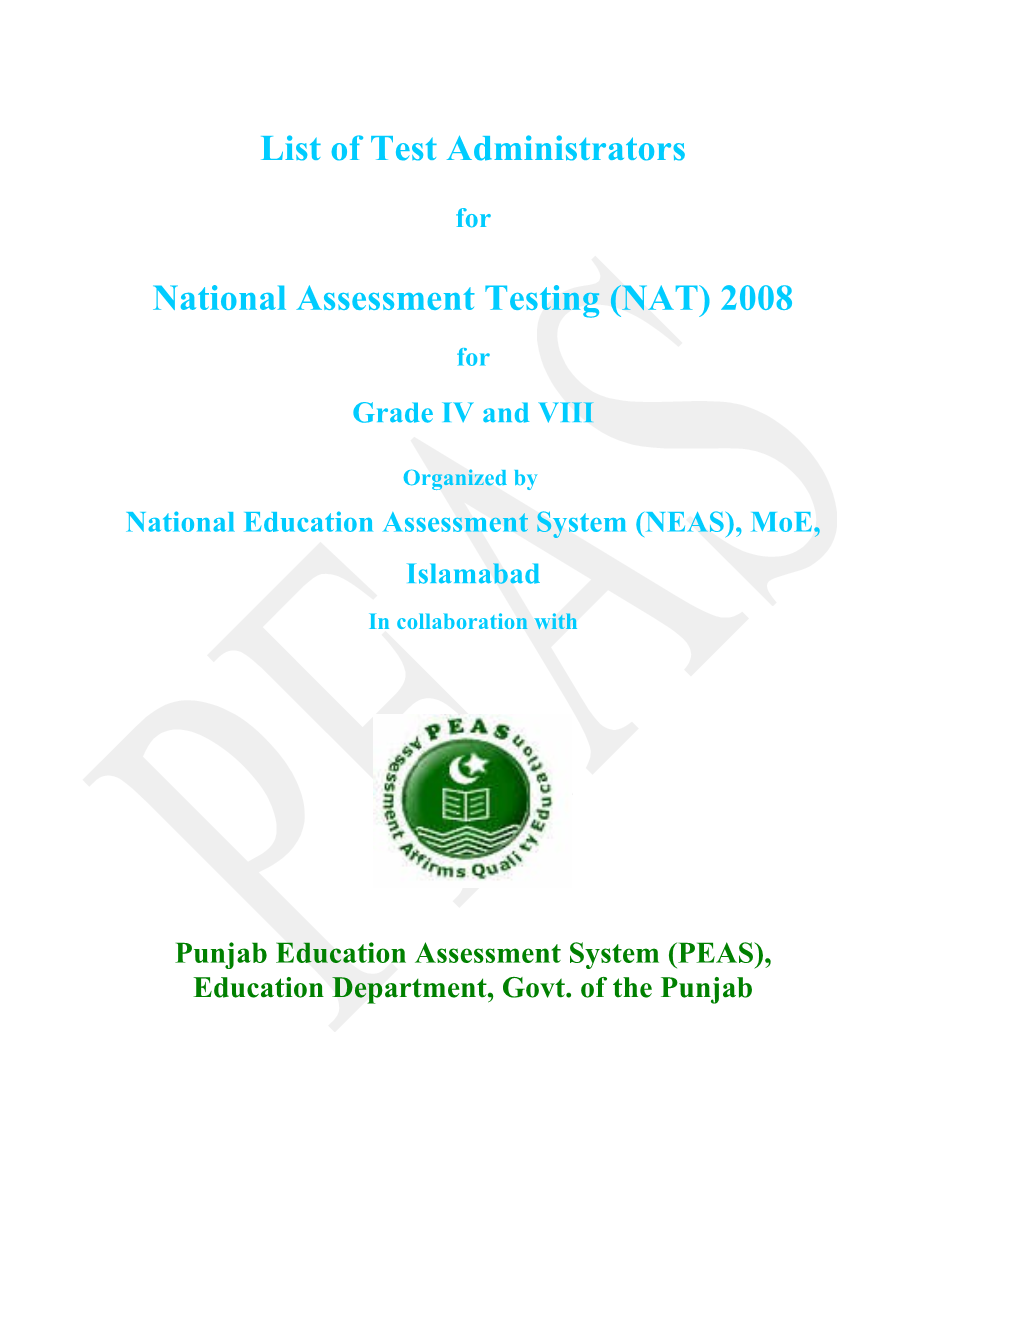 National Assessment Testing (NAT) 2008